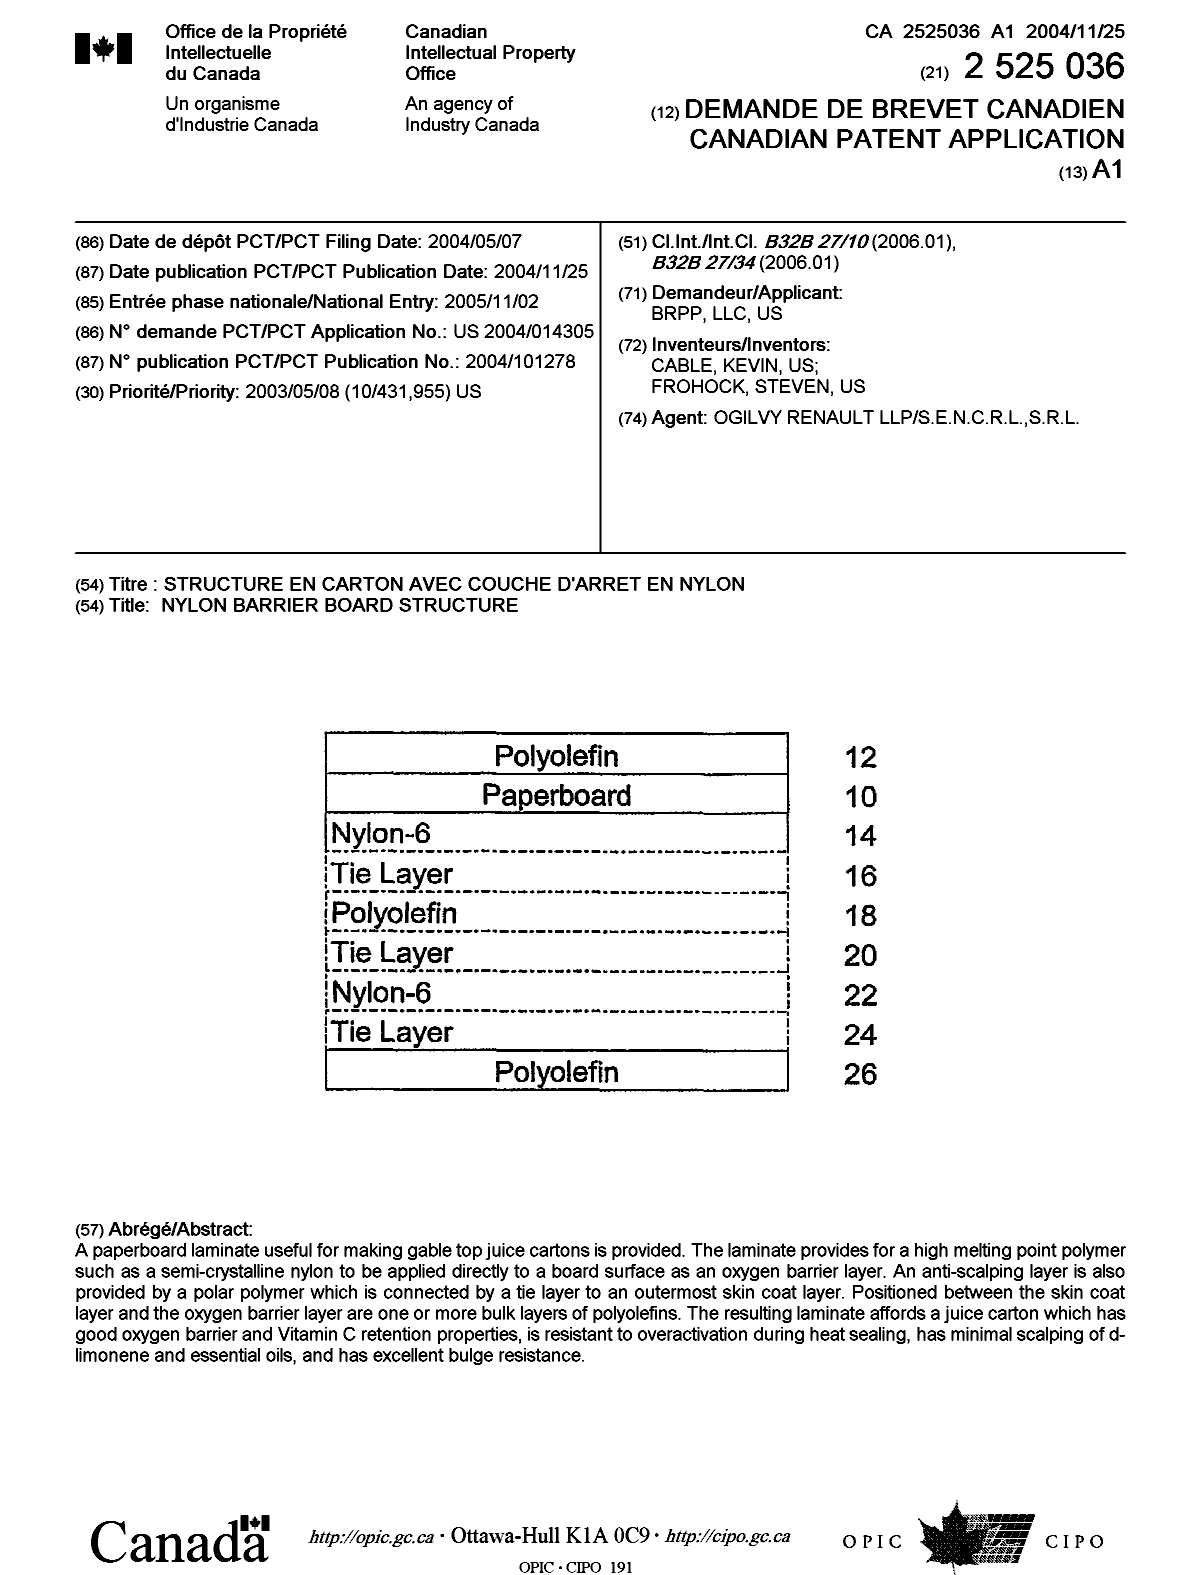 Document de brevet canadien 2525036. Page couverture 20060113. Image 1 de 1